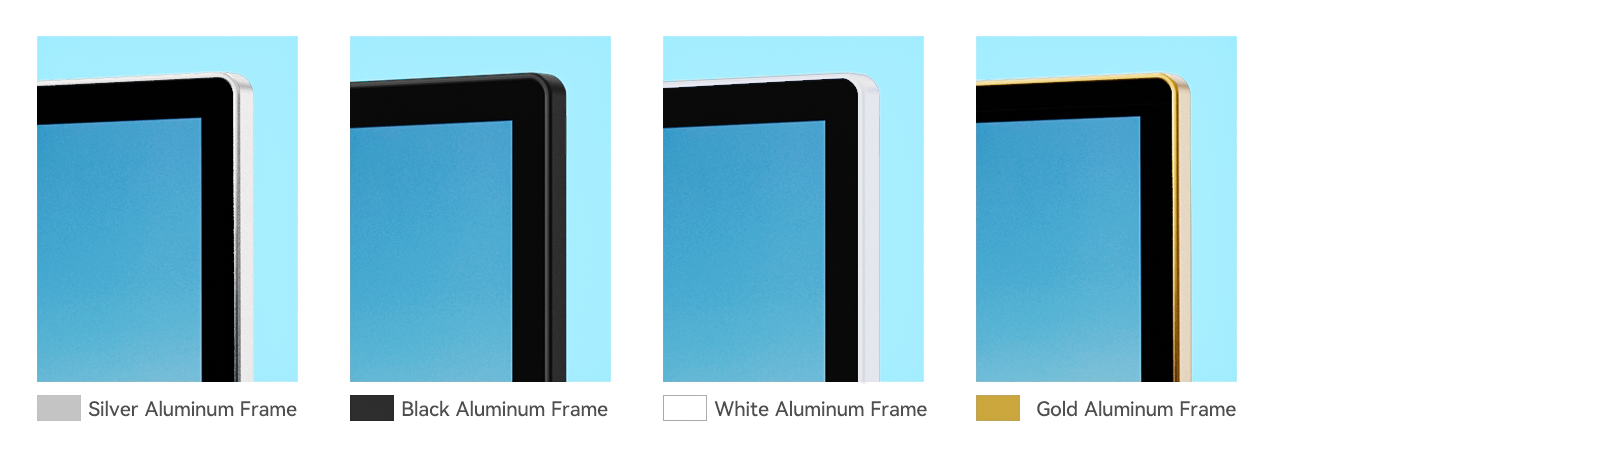 Digital Signage Display Aluminum Frame Color Design